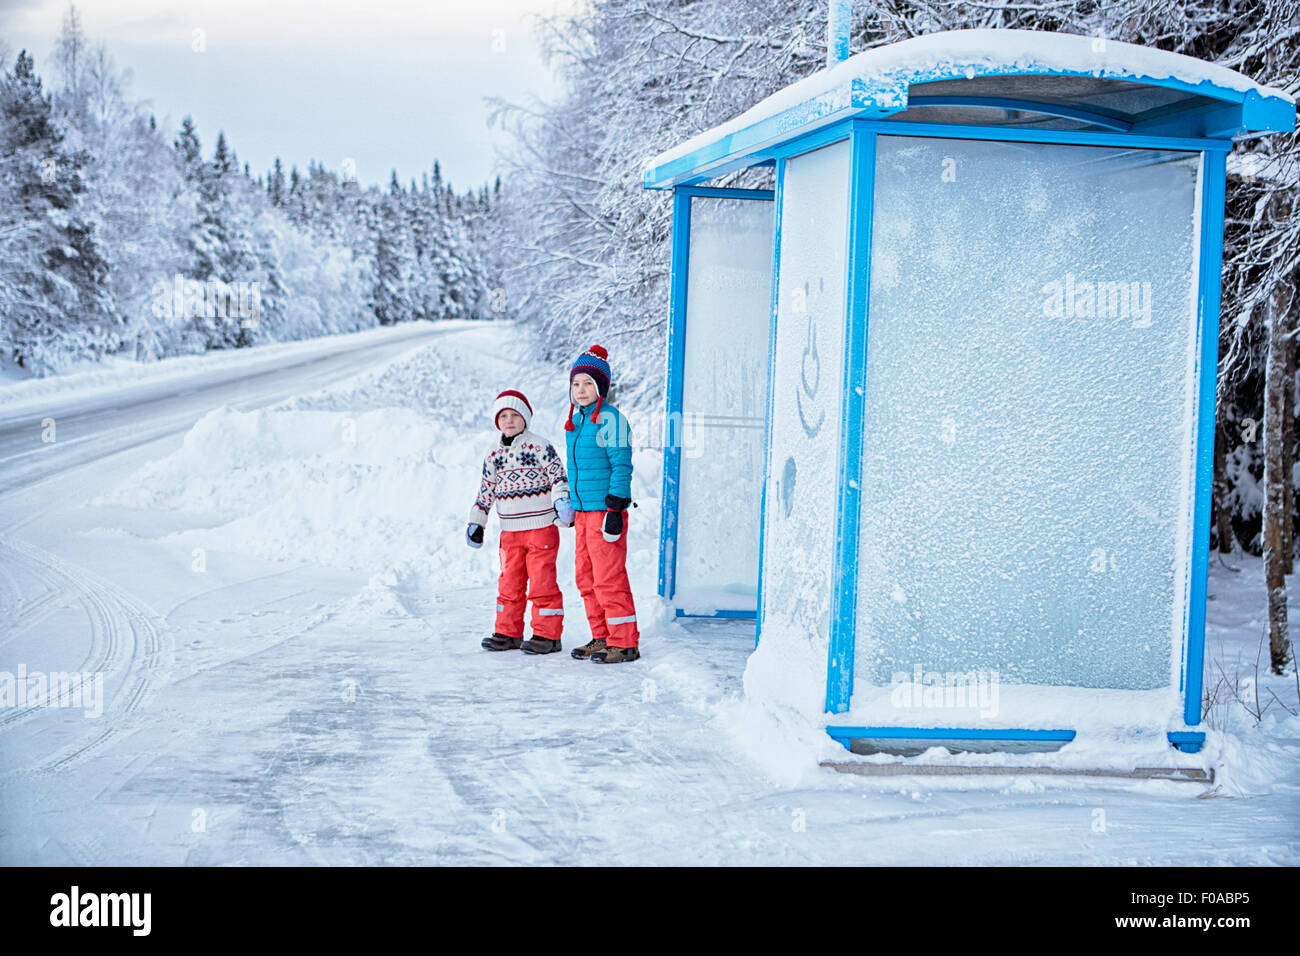 Deux frères en attente à l'arrêt de bus couverts de neige, Hemavan,Sweden Banque D'Images